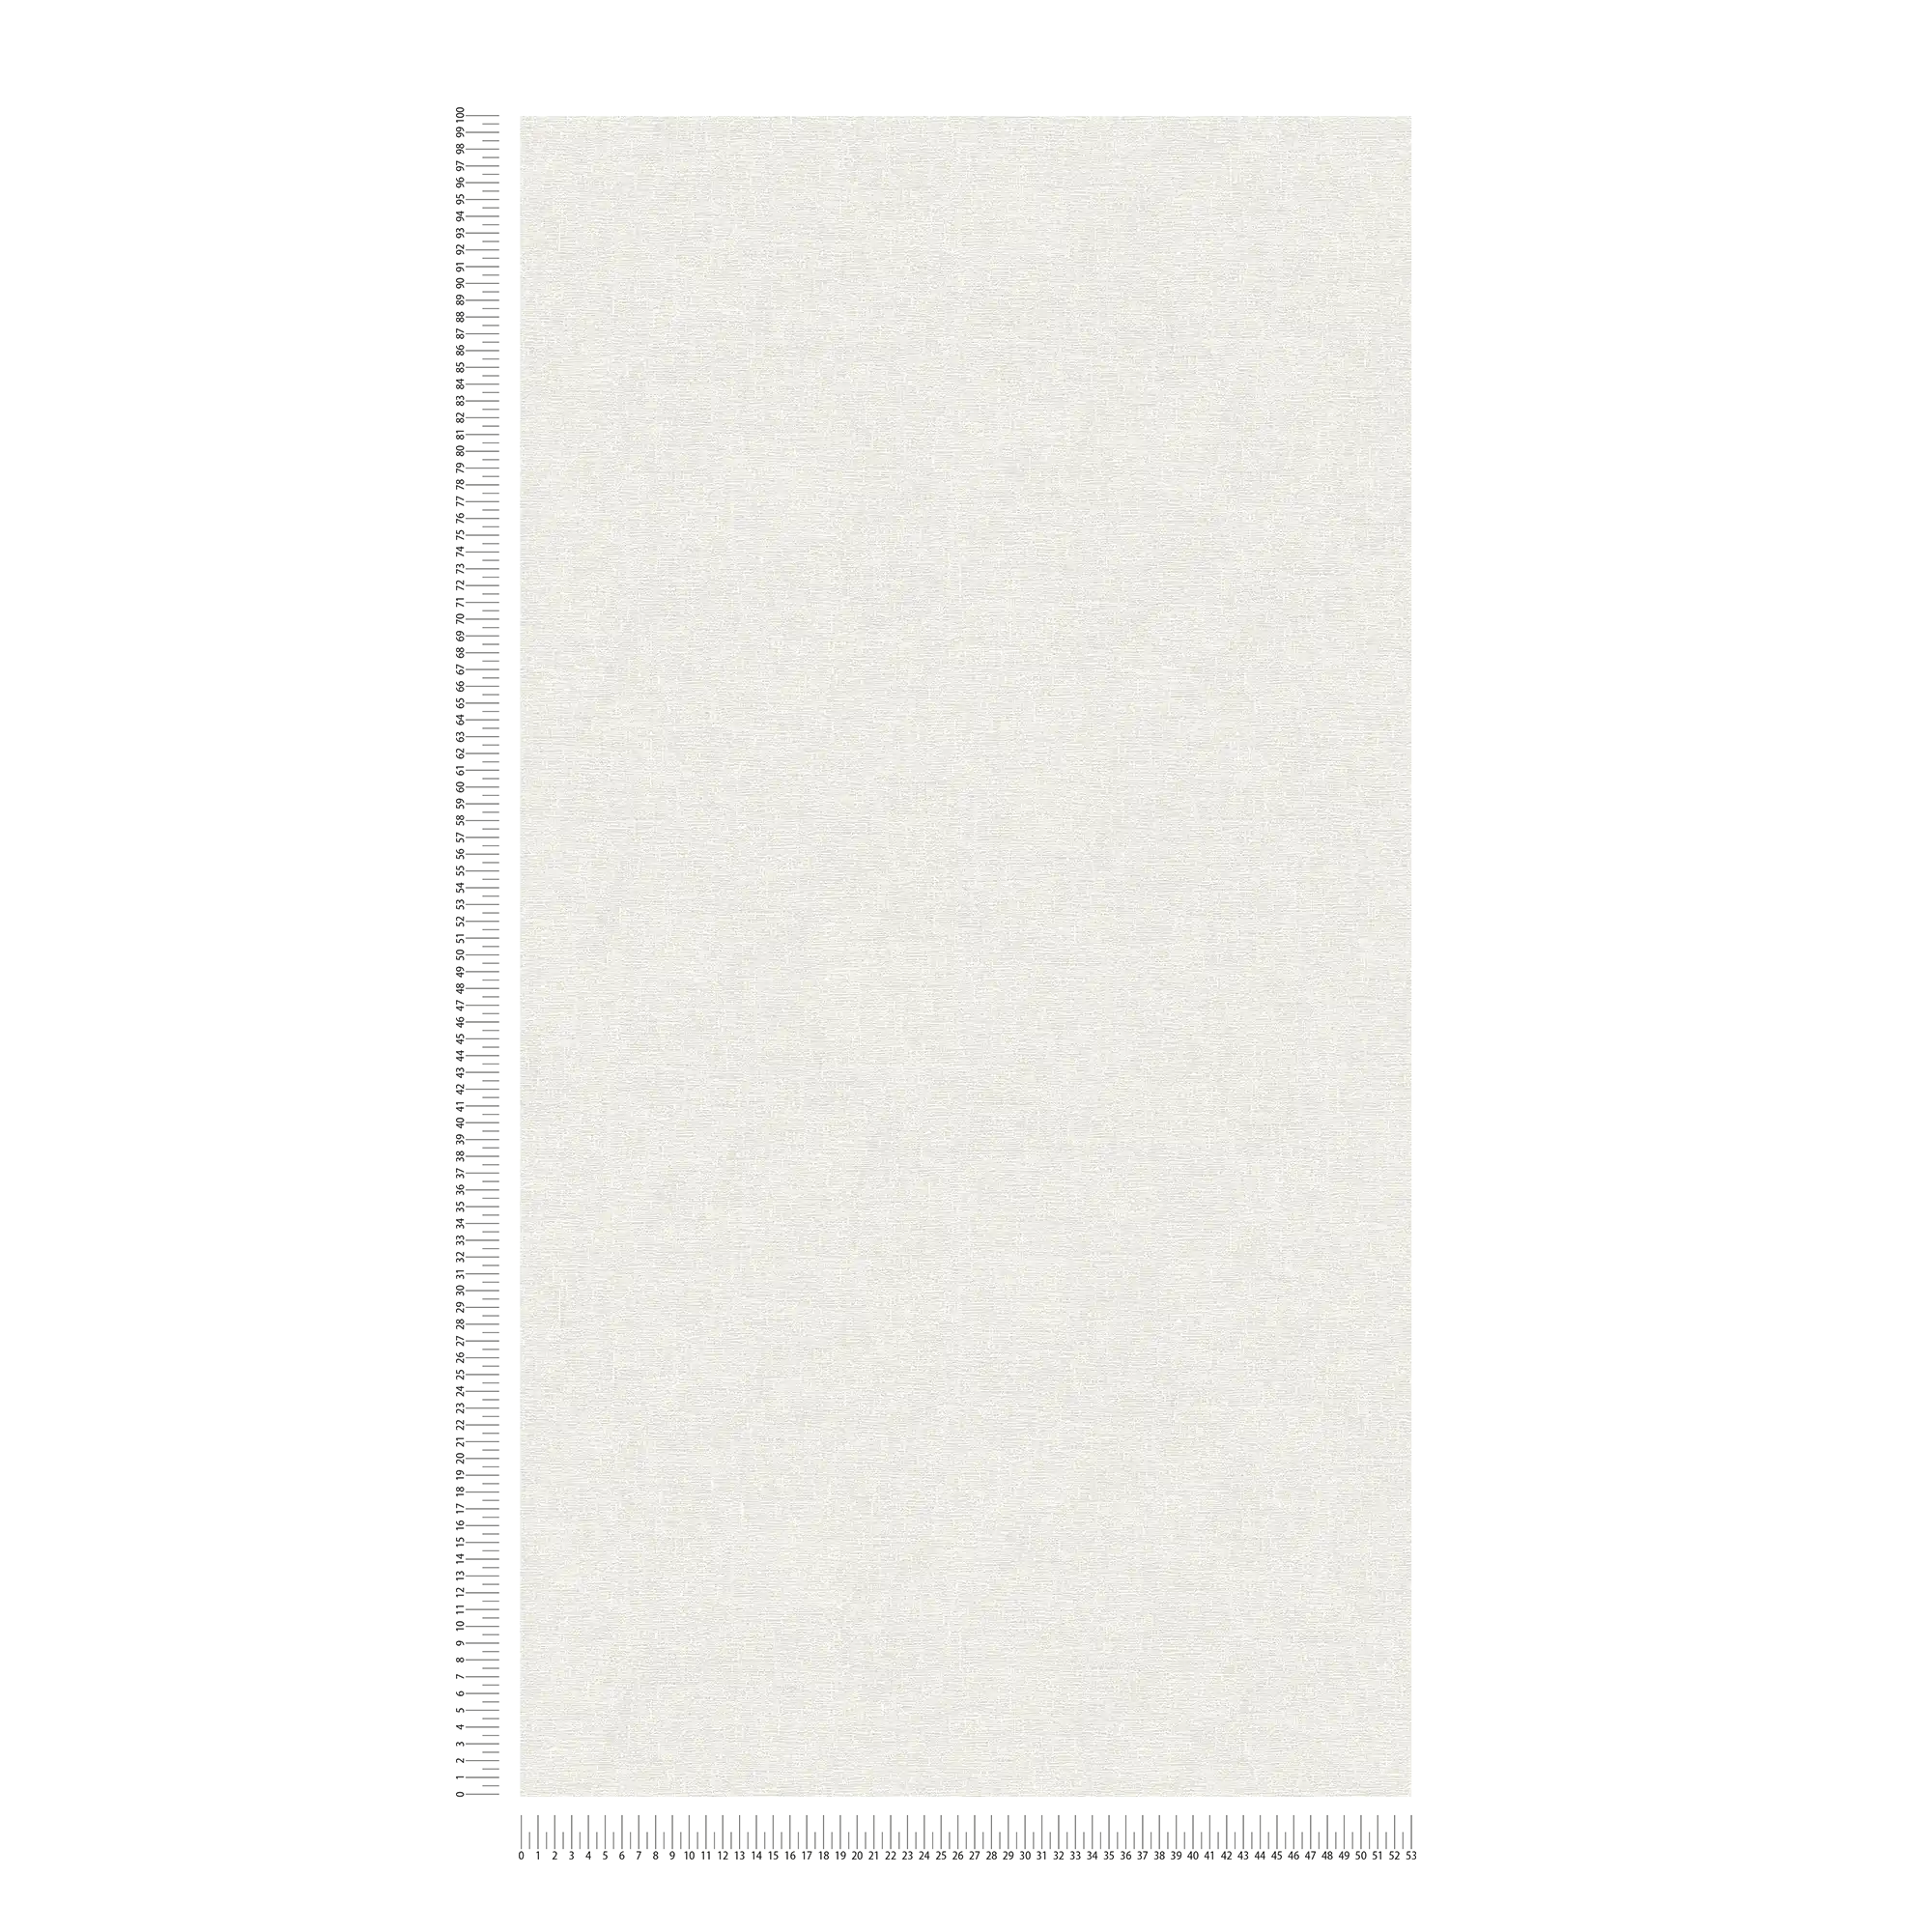             Plain wallpaper dark white with subtle textured pattern
        